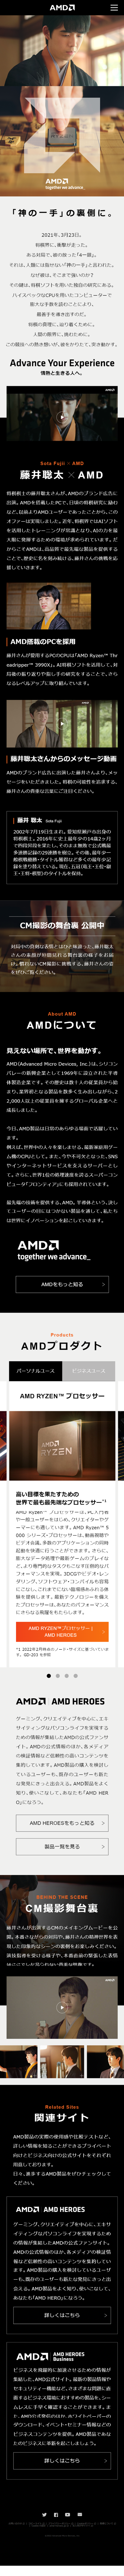 AMD×藤井聡太_sp_1